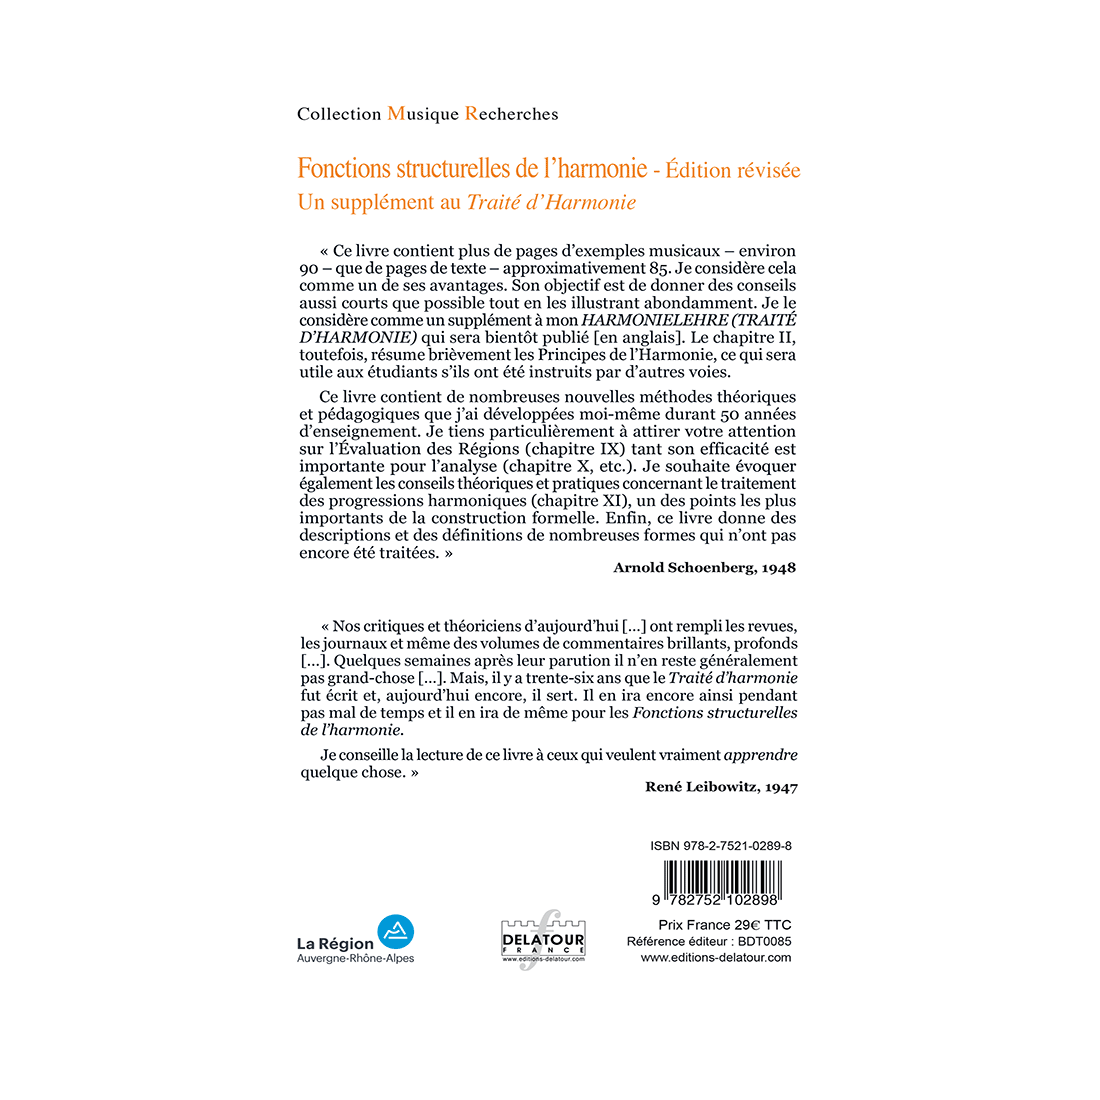 Fonctions structurelles de l'harmonie – Revised edition